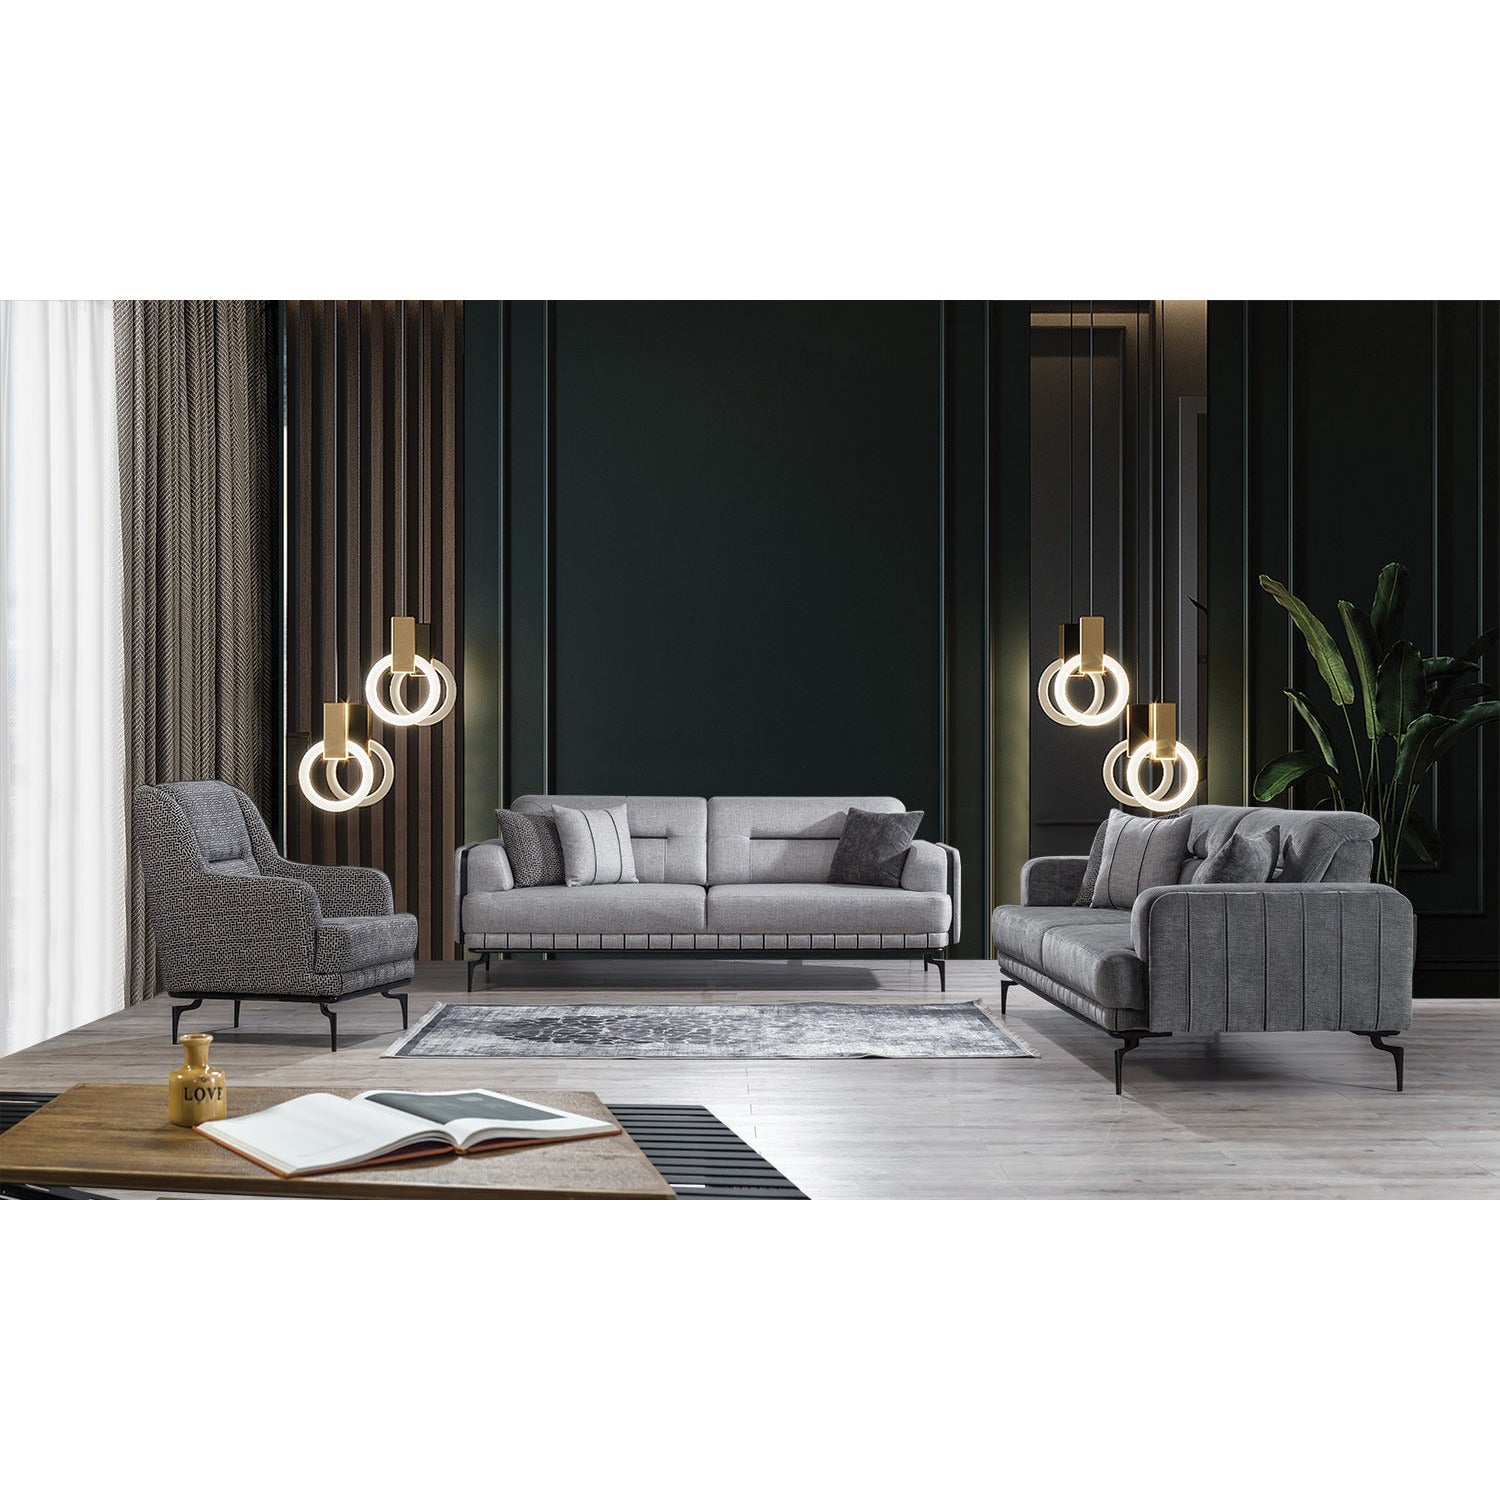 Piano Fåtölj - LINE Furniture Group